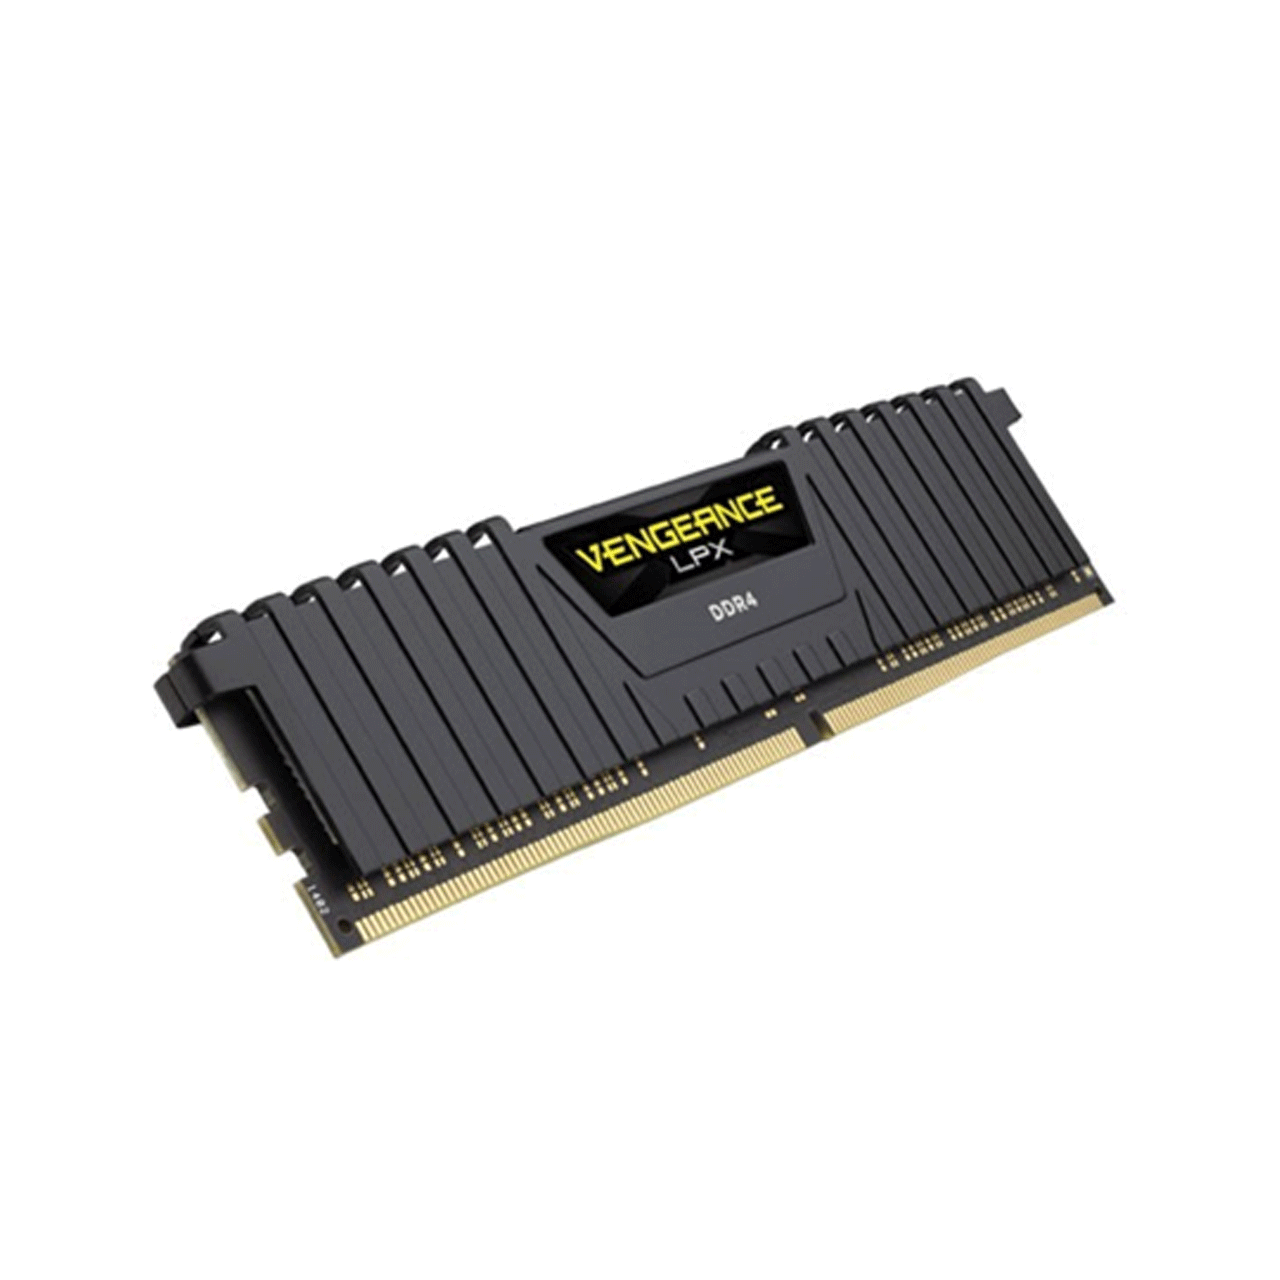 Corsair-VENGEANCE-LPX-16GB-DUAL-3200MHz-CL16-DDR4-RAM